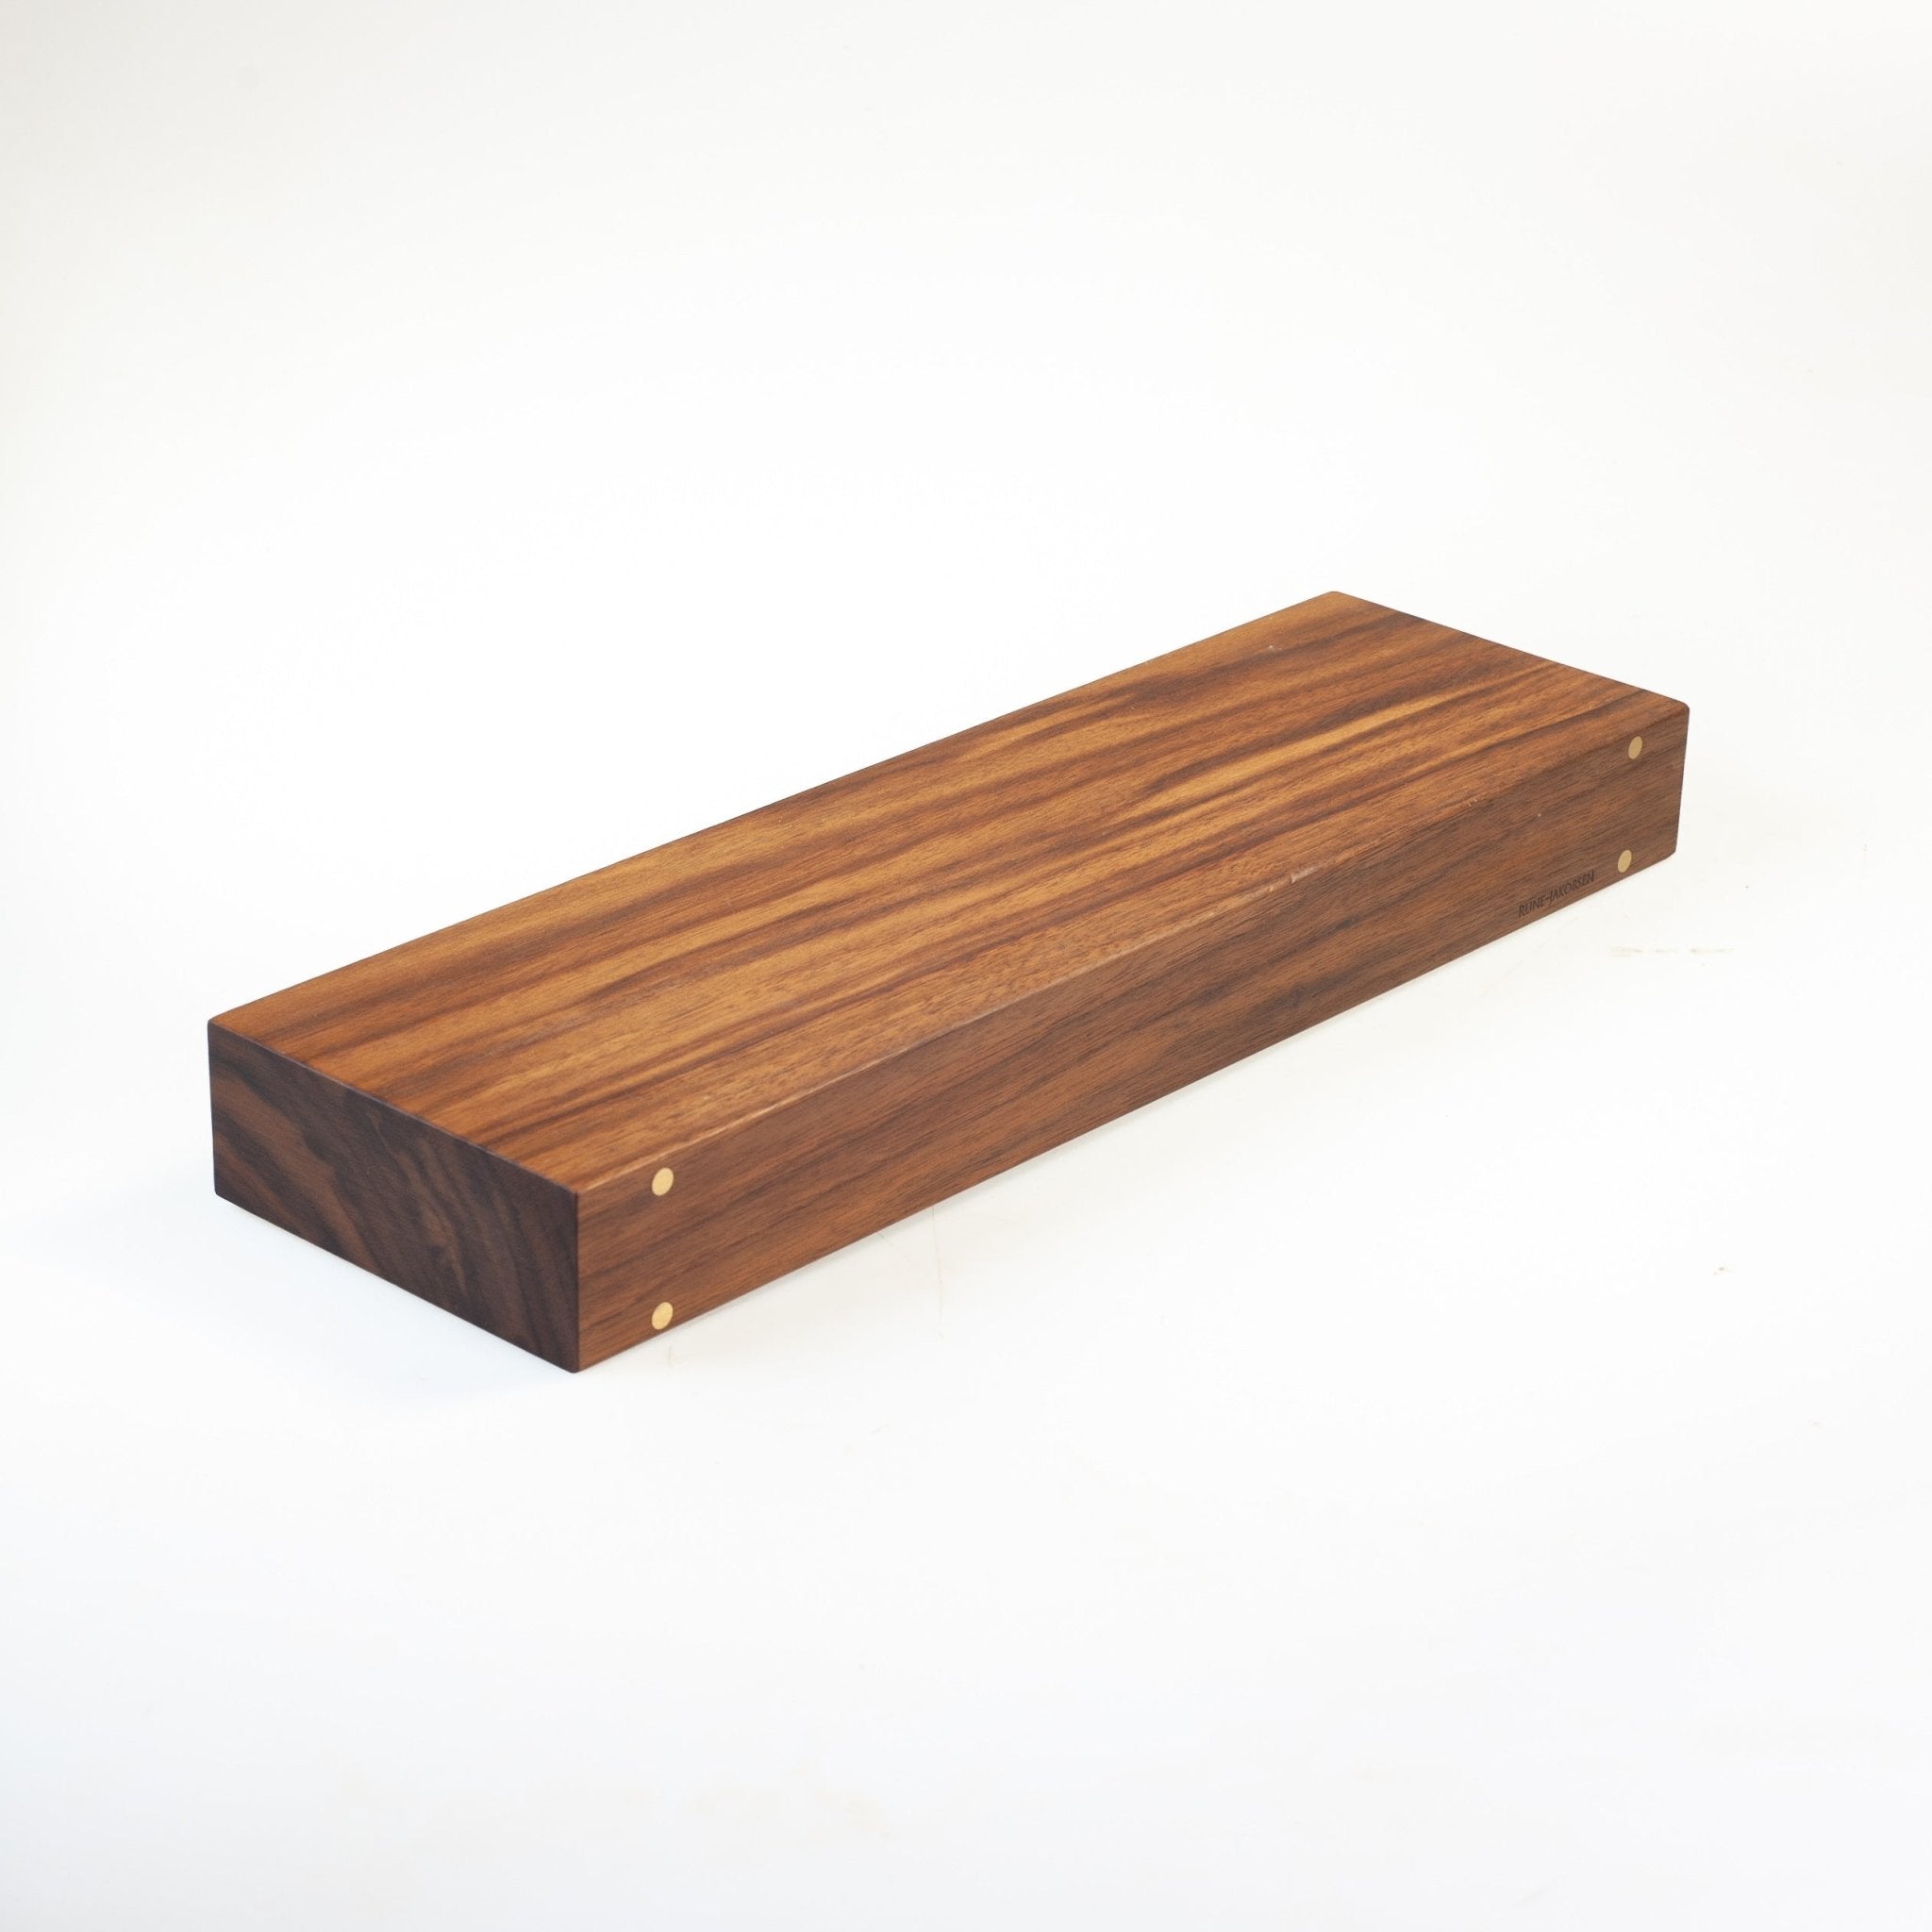 'OUTLET / Plankehylde 40cm, valnød' by Rune-Jakobsen Design. Explore our large selction of